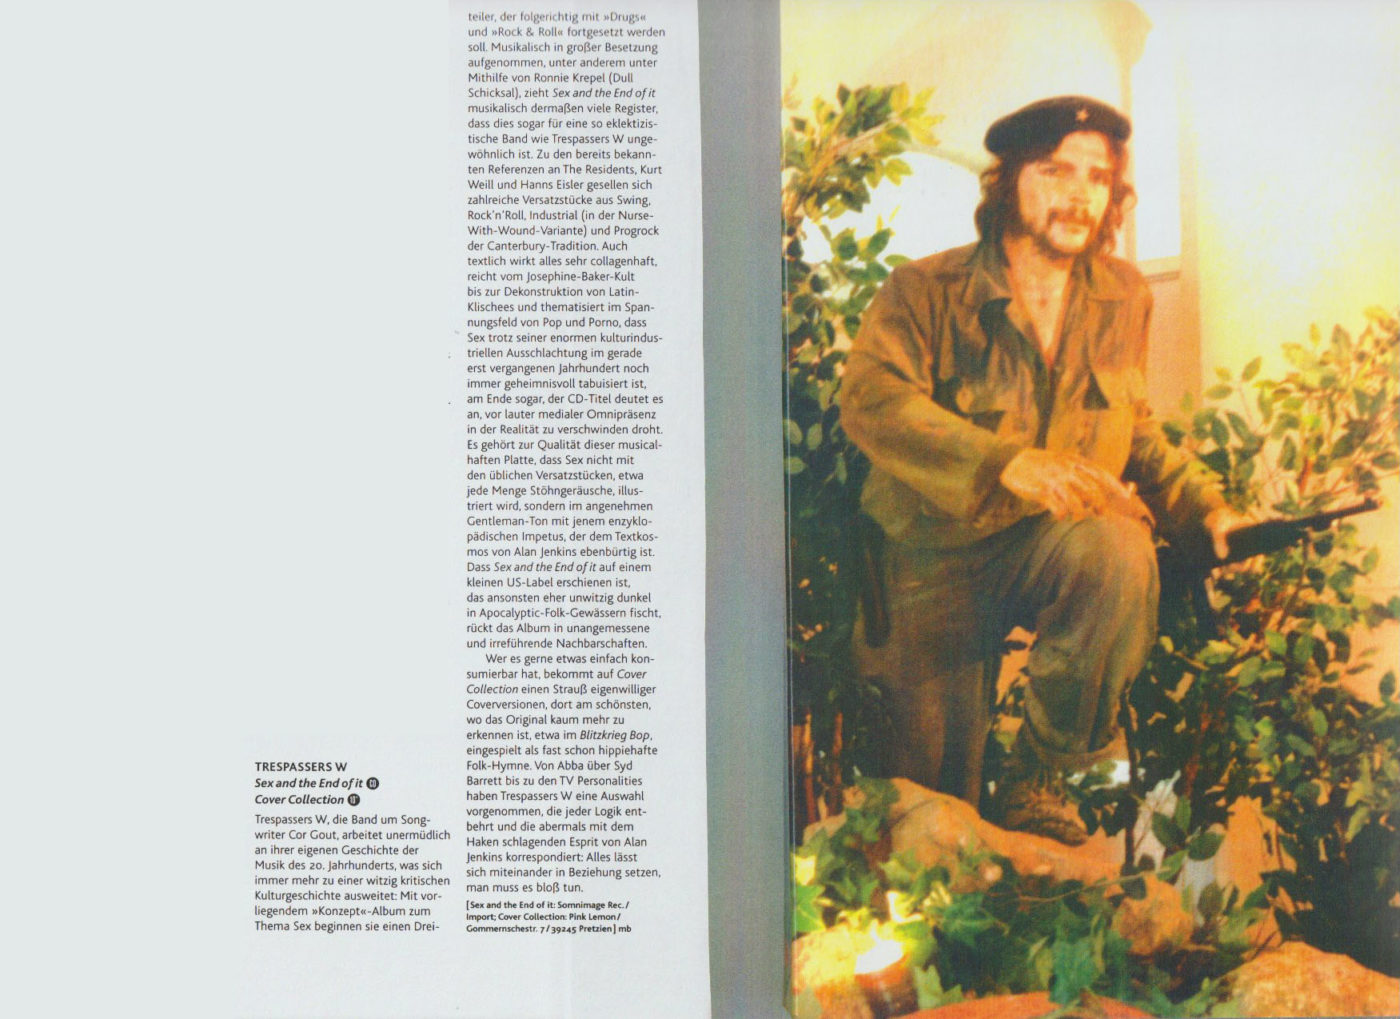 Enrico Ramunni (+ Cover Collection), Rockerilla, # 277, september 2003